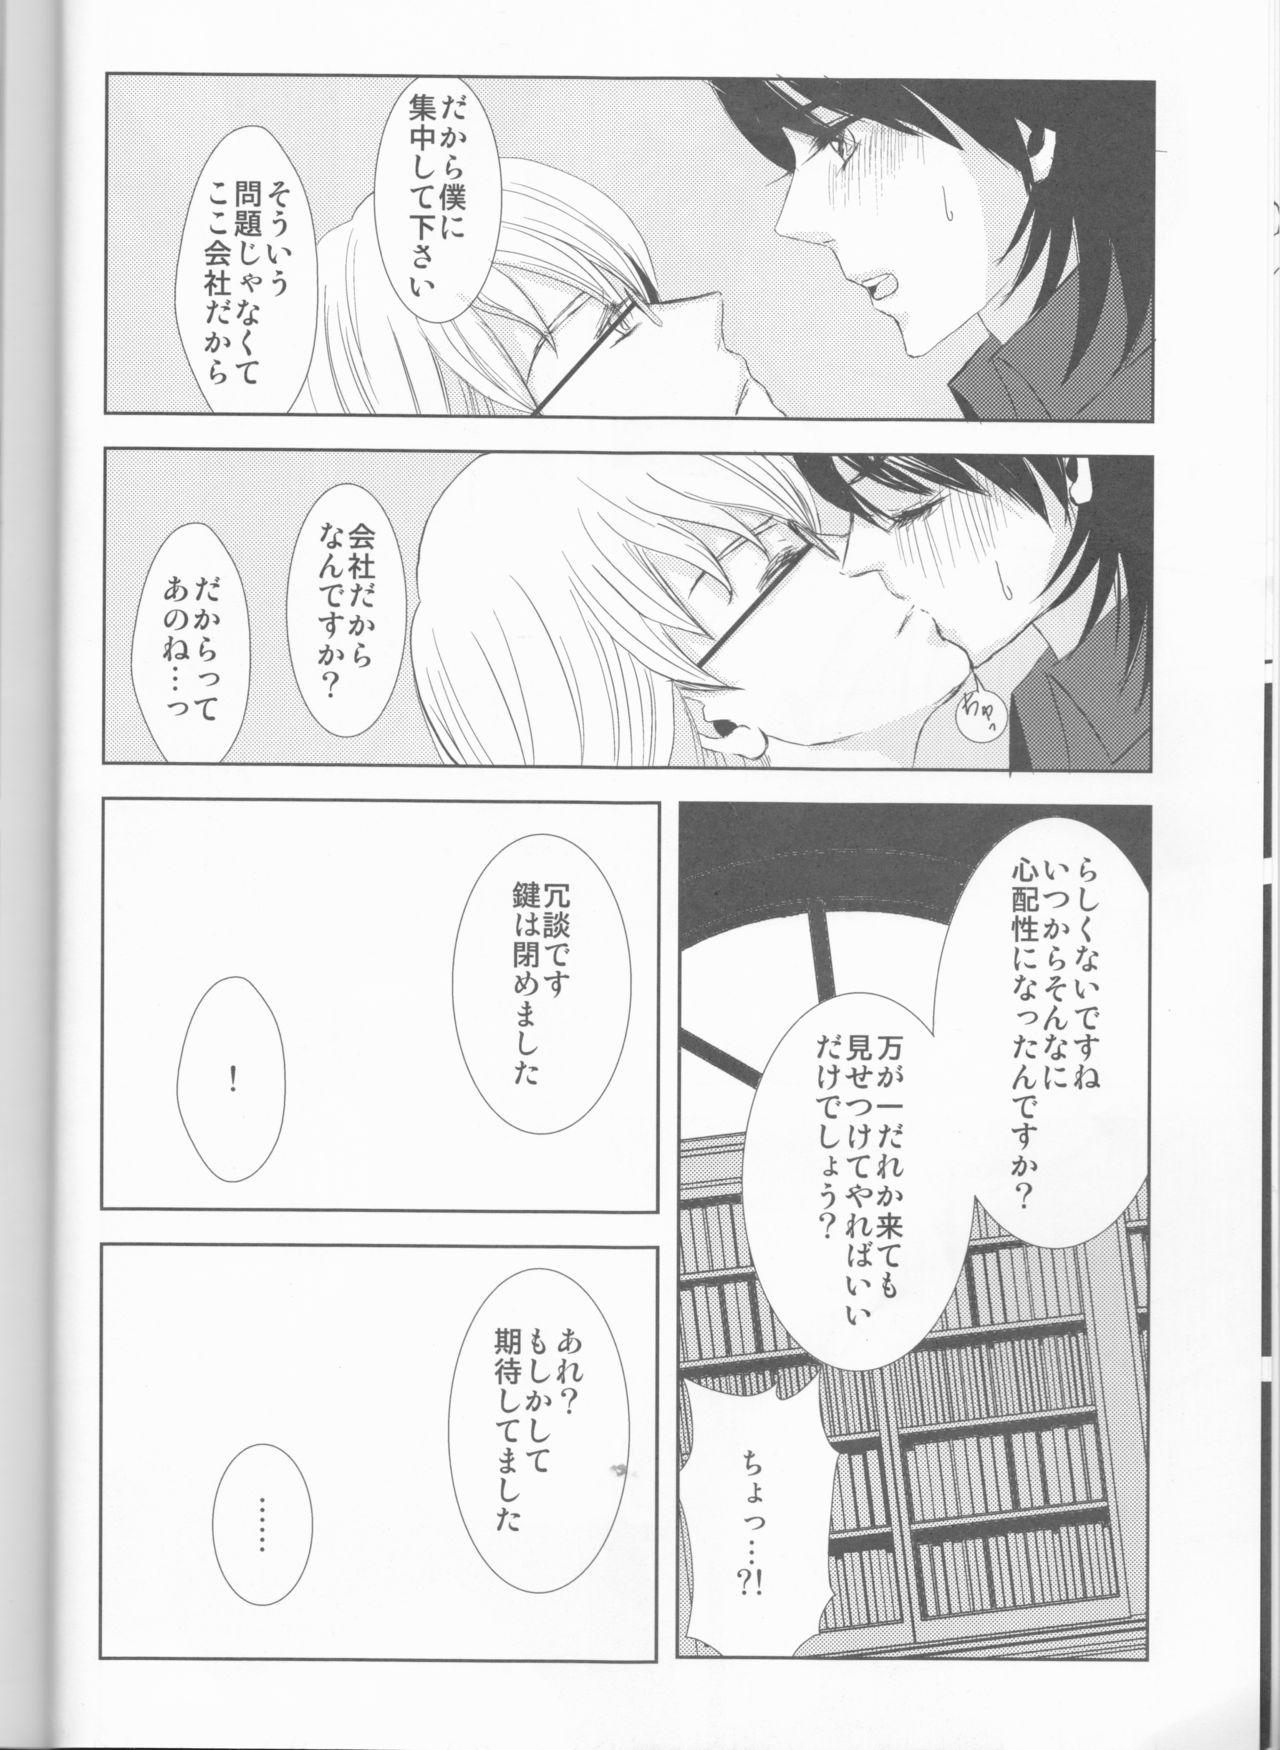 Putita Itsuka wa inaku naru kimi e - Tiger and bunny Femdom Pov - Page 7